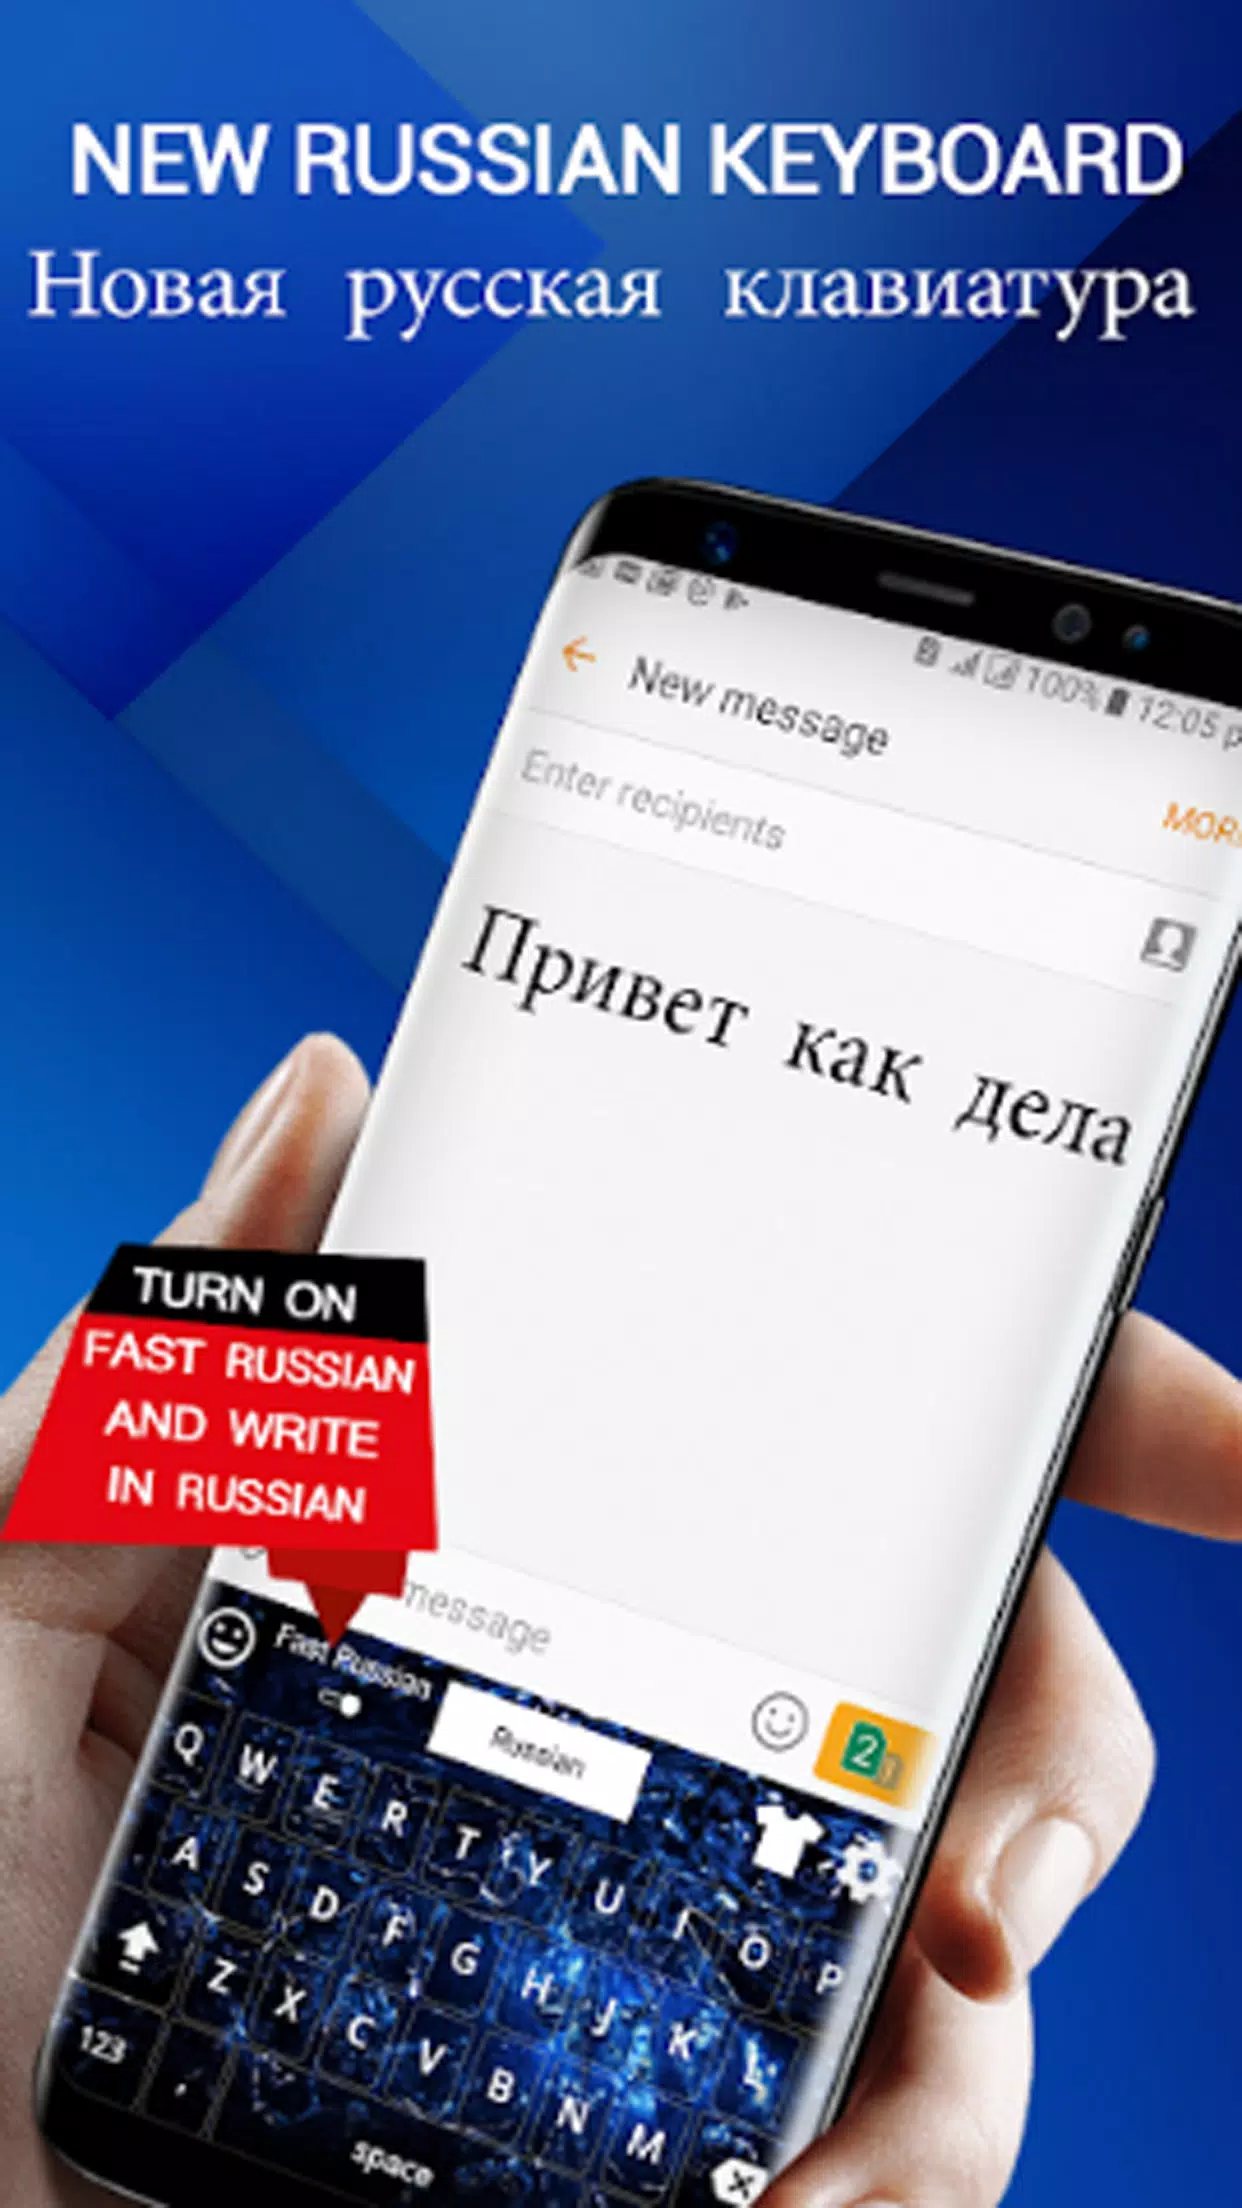 Nouveau clavier russe 2018: App clavier russe APK pour Android Télécharger